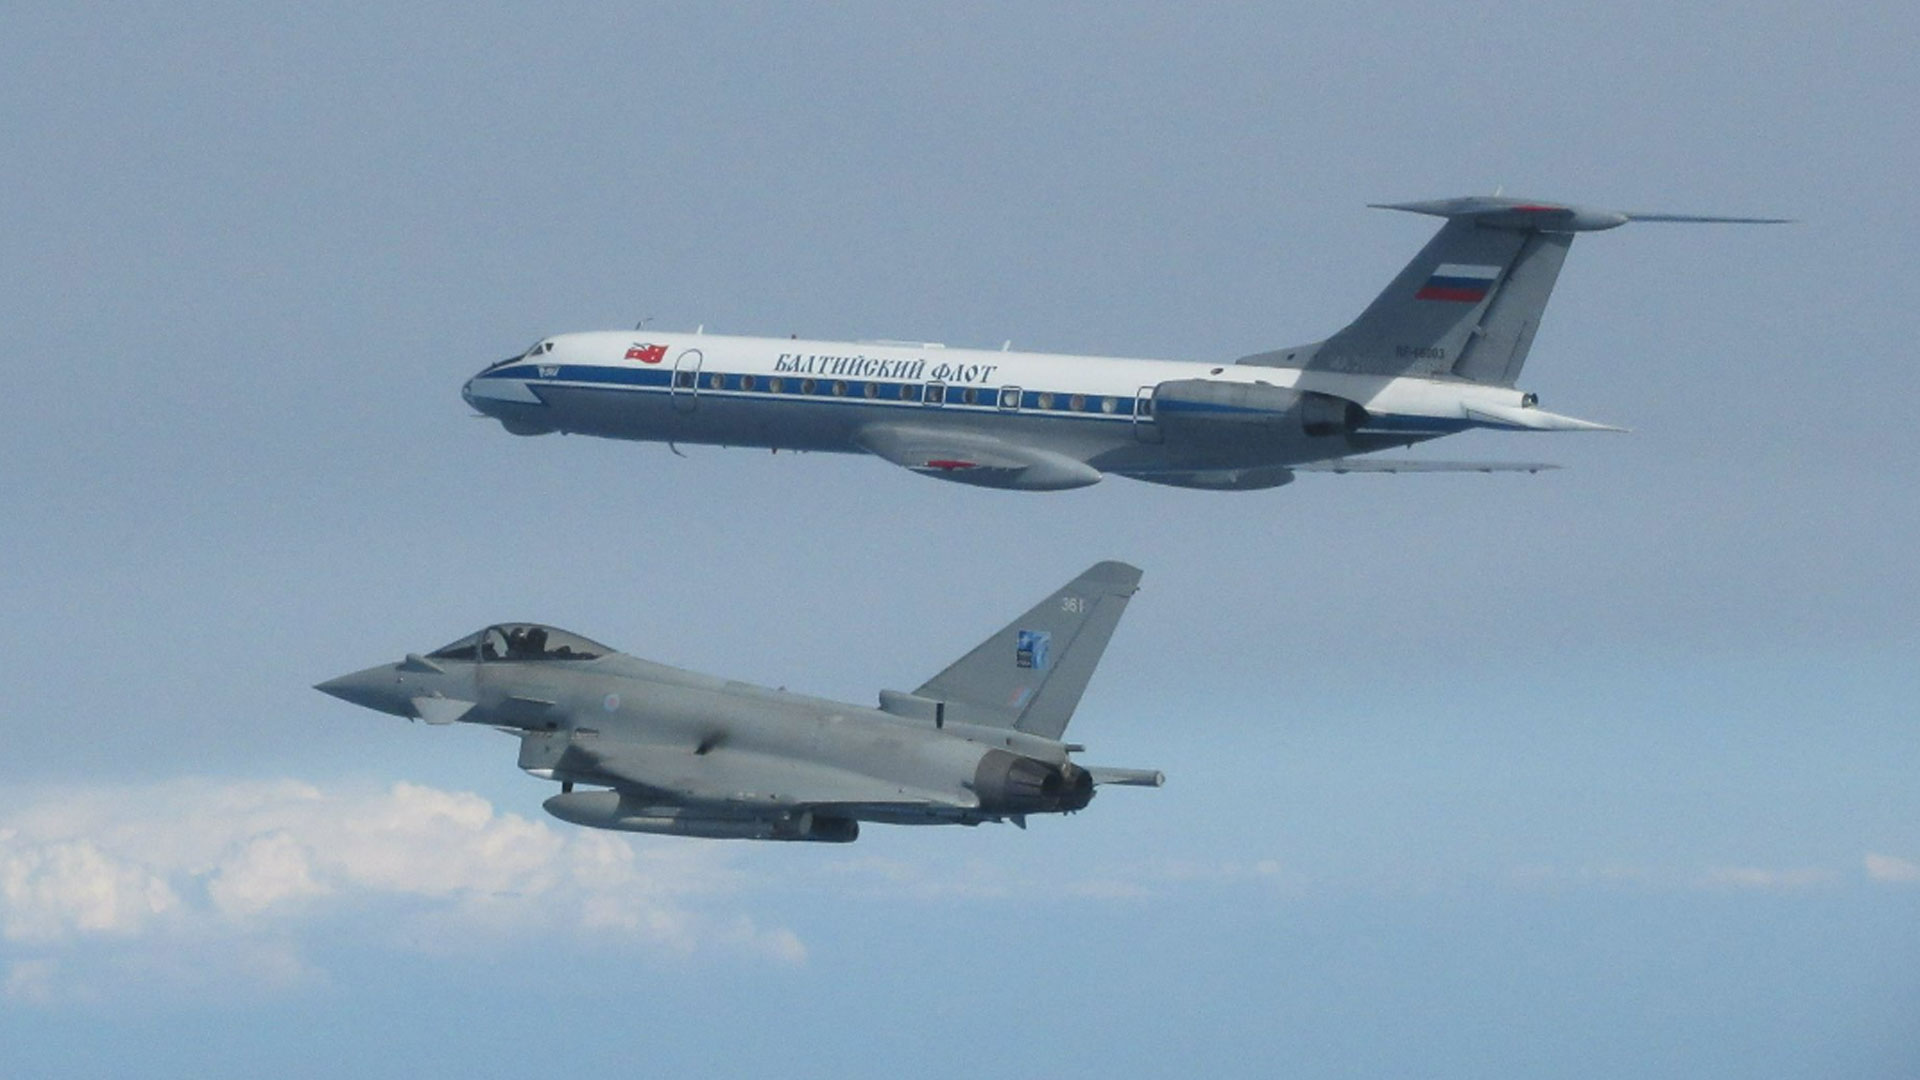 Ein Taifun überwachte im Juni eine Tupolew Tu-134 der russischen Marine nahe der NATO-Grenze genau